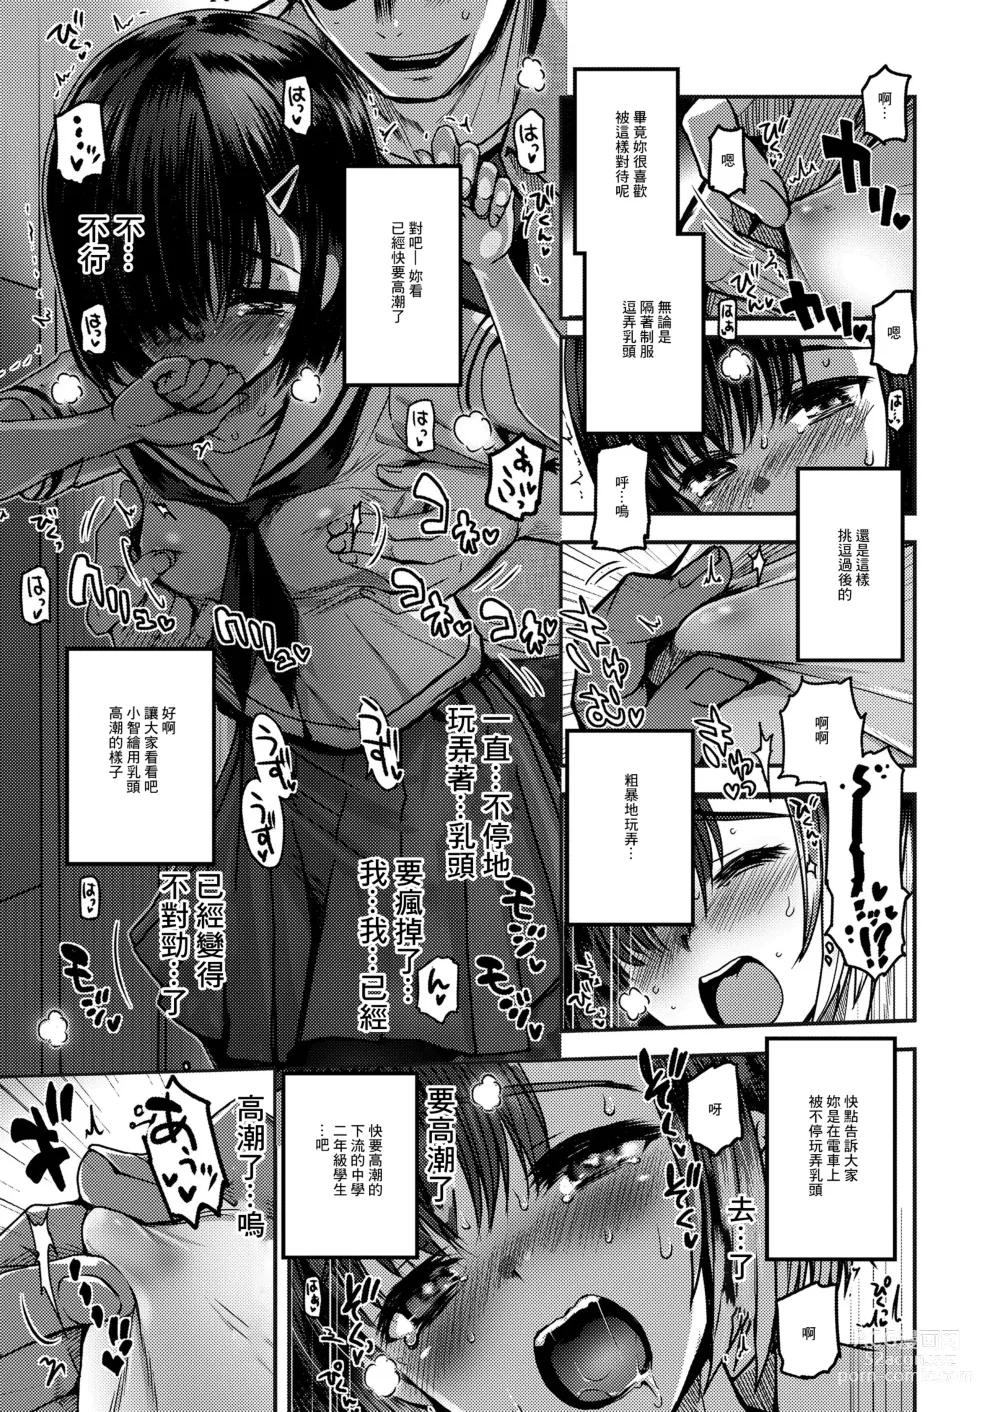 Page 3 of manga Re: Natsumushi